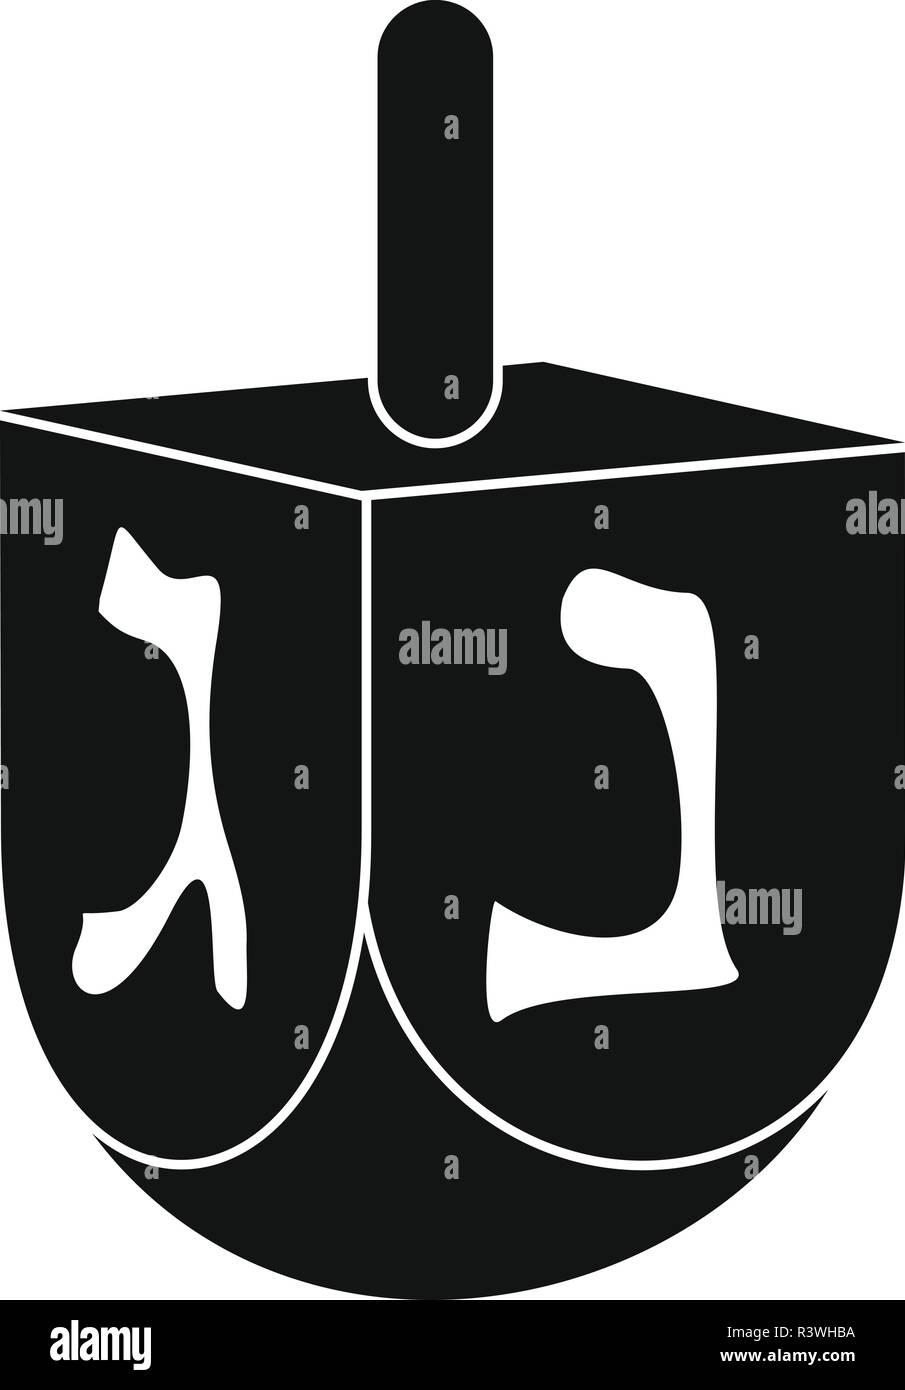 Icône dreidel juif. Simple illustration de l'icône vecteur dreidel juif pour la conception web isolé sur fond blanc Illustration de Vecteur